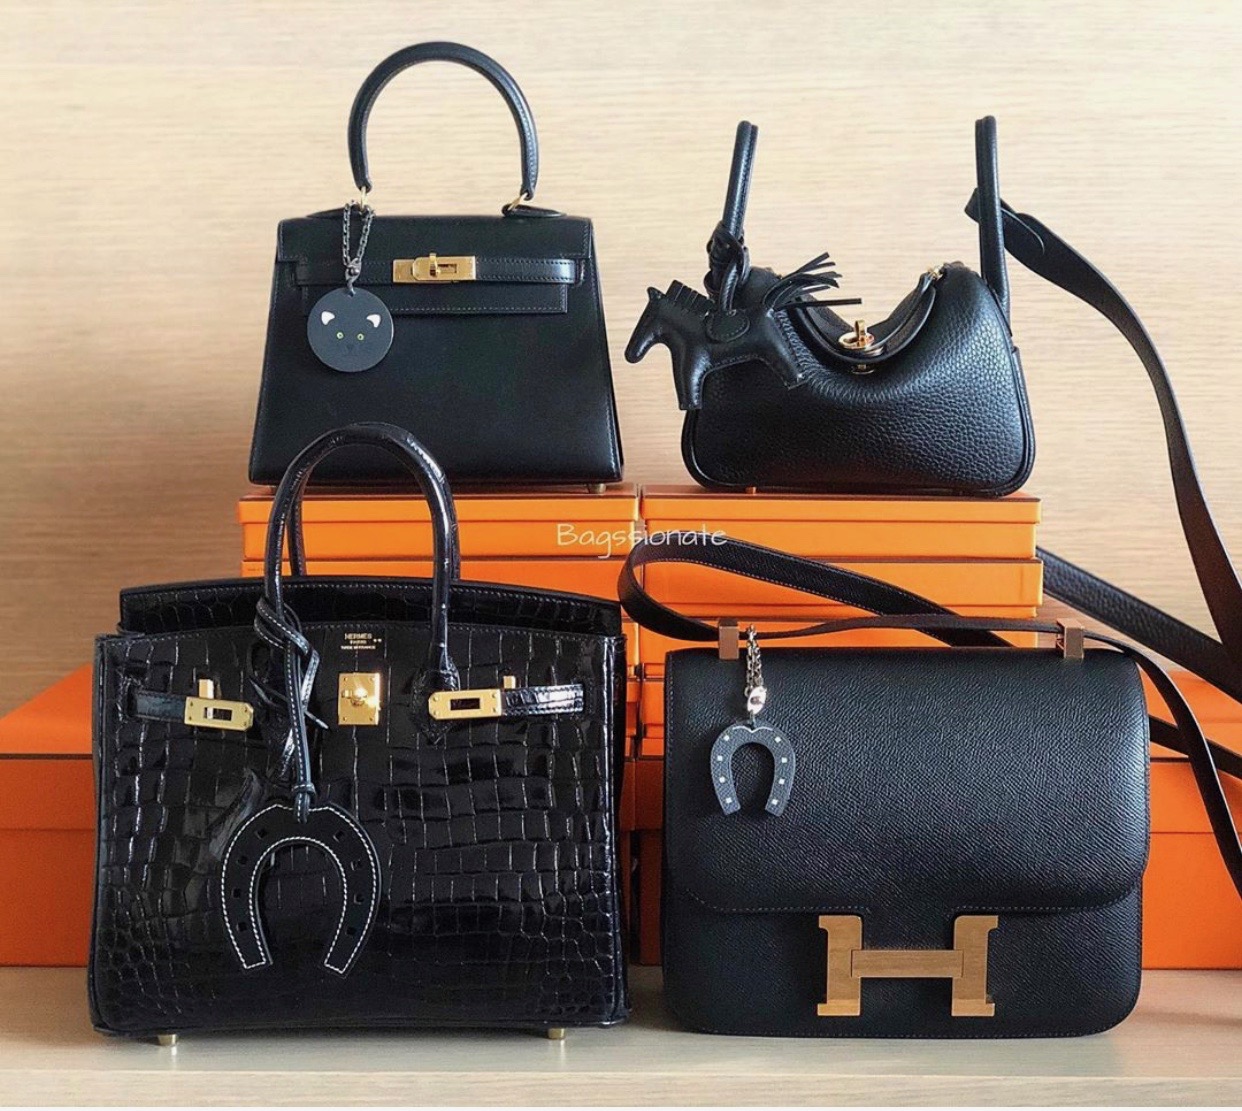 Hermès Black Bags in Every Price Range PurseBop